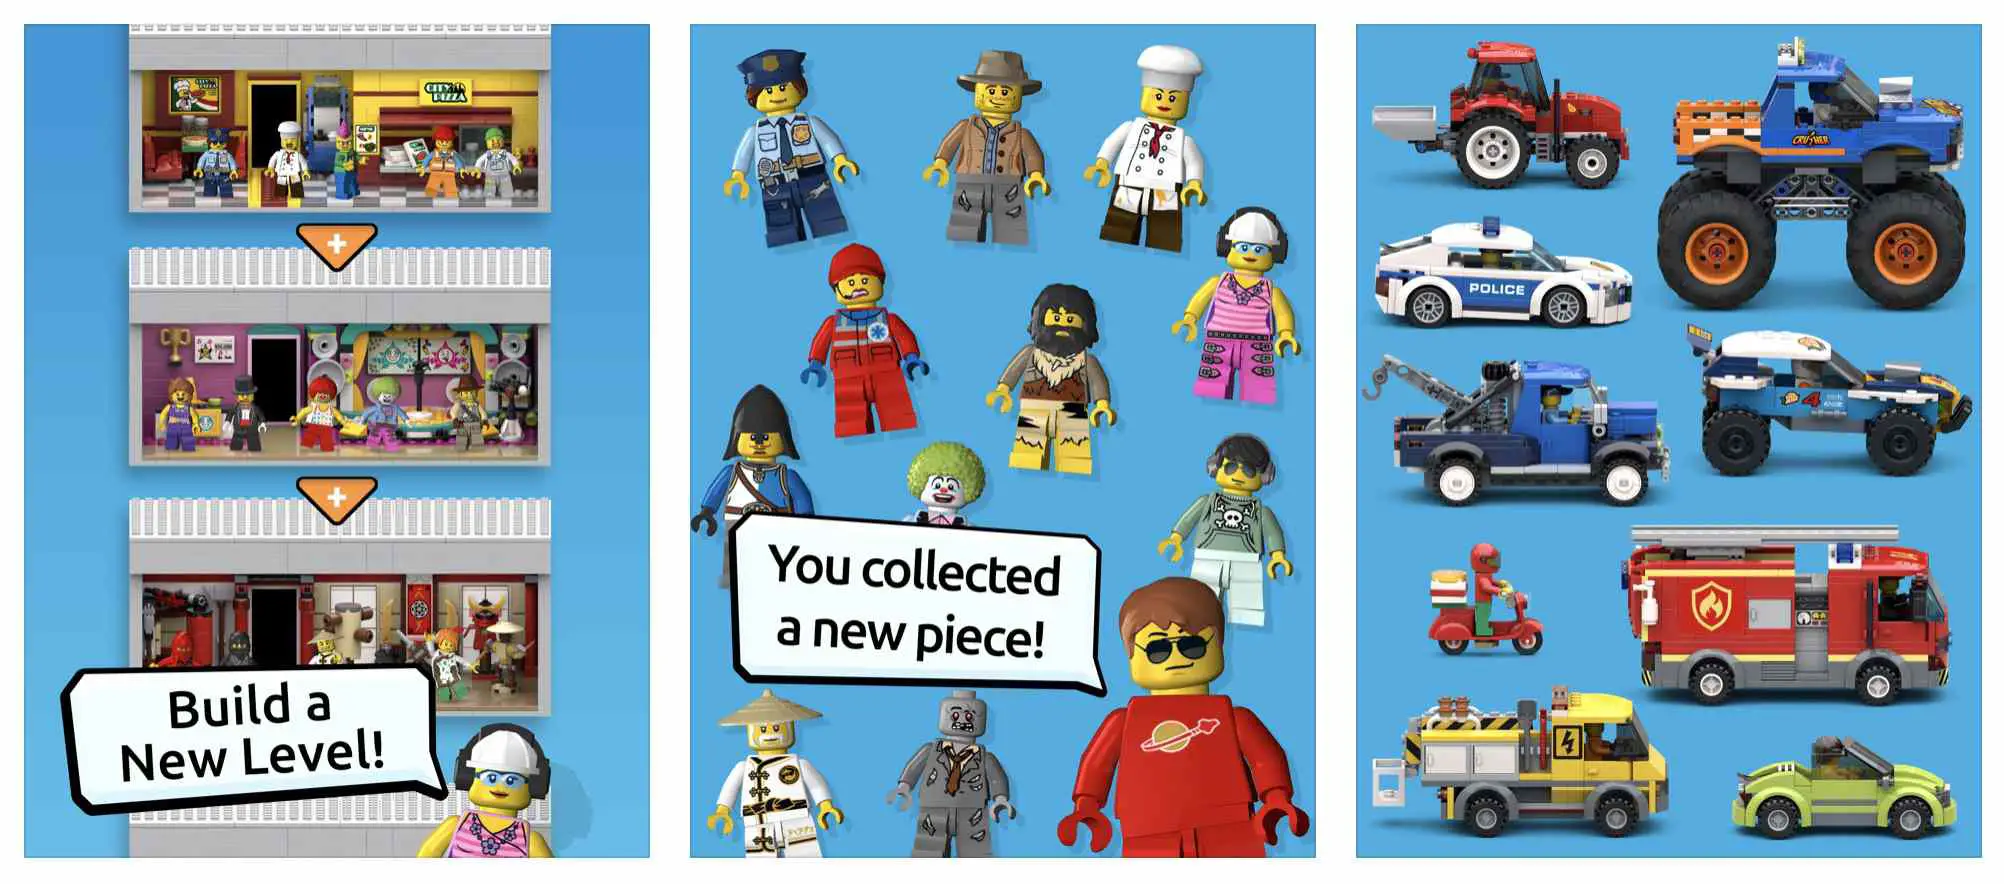 Captura de tela da Lego Tower